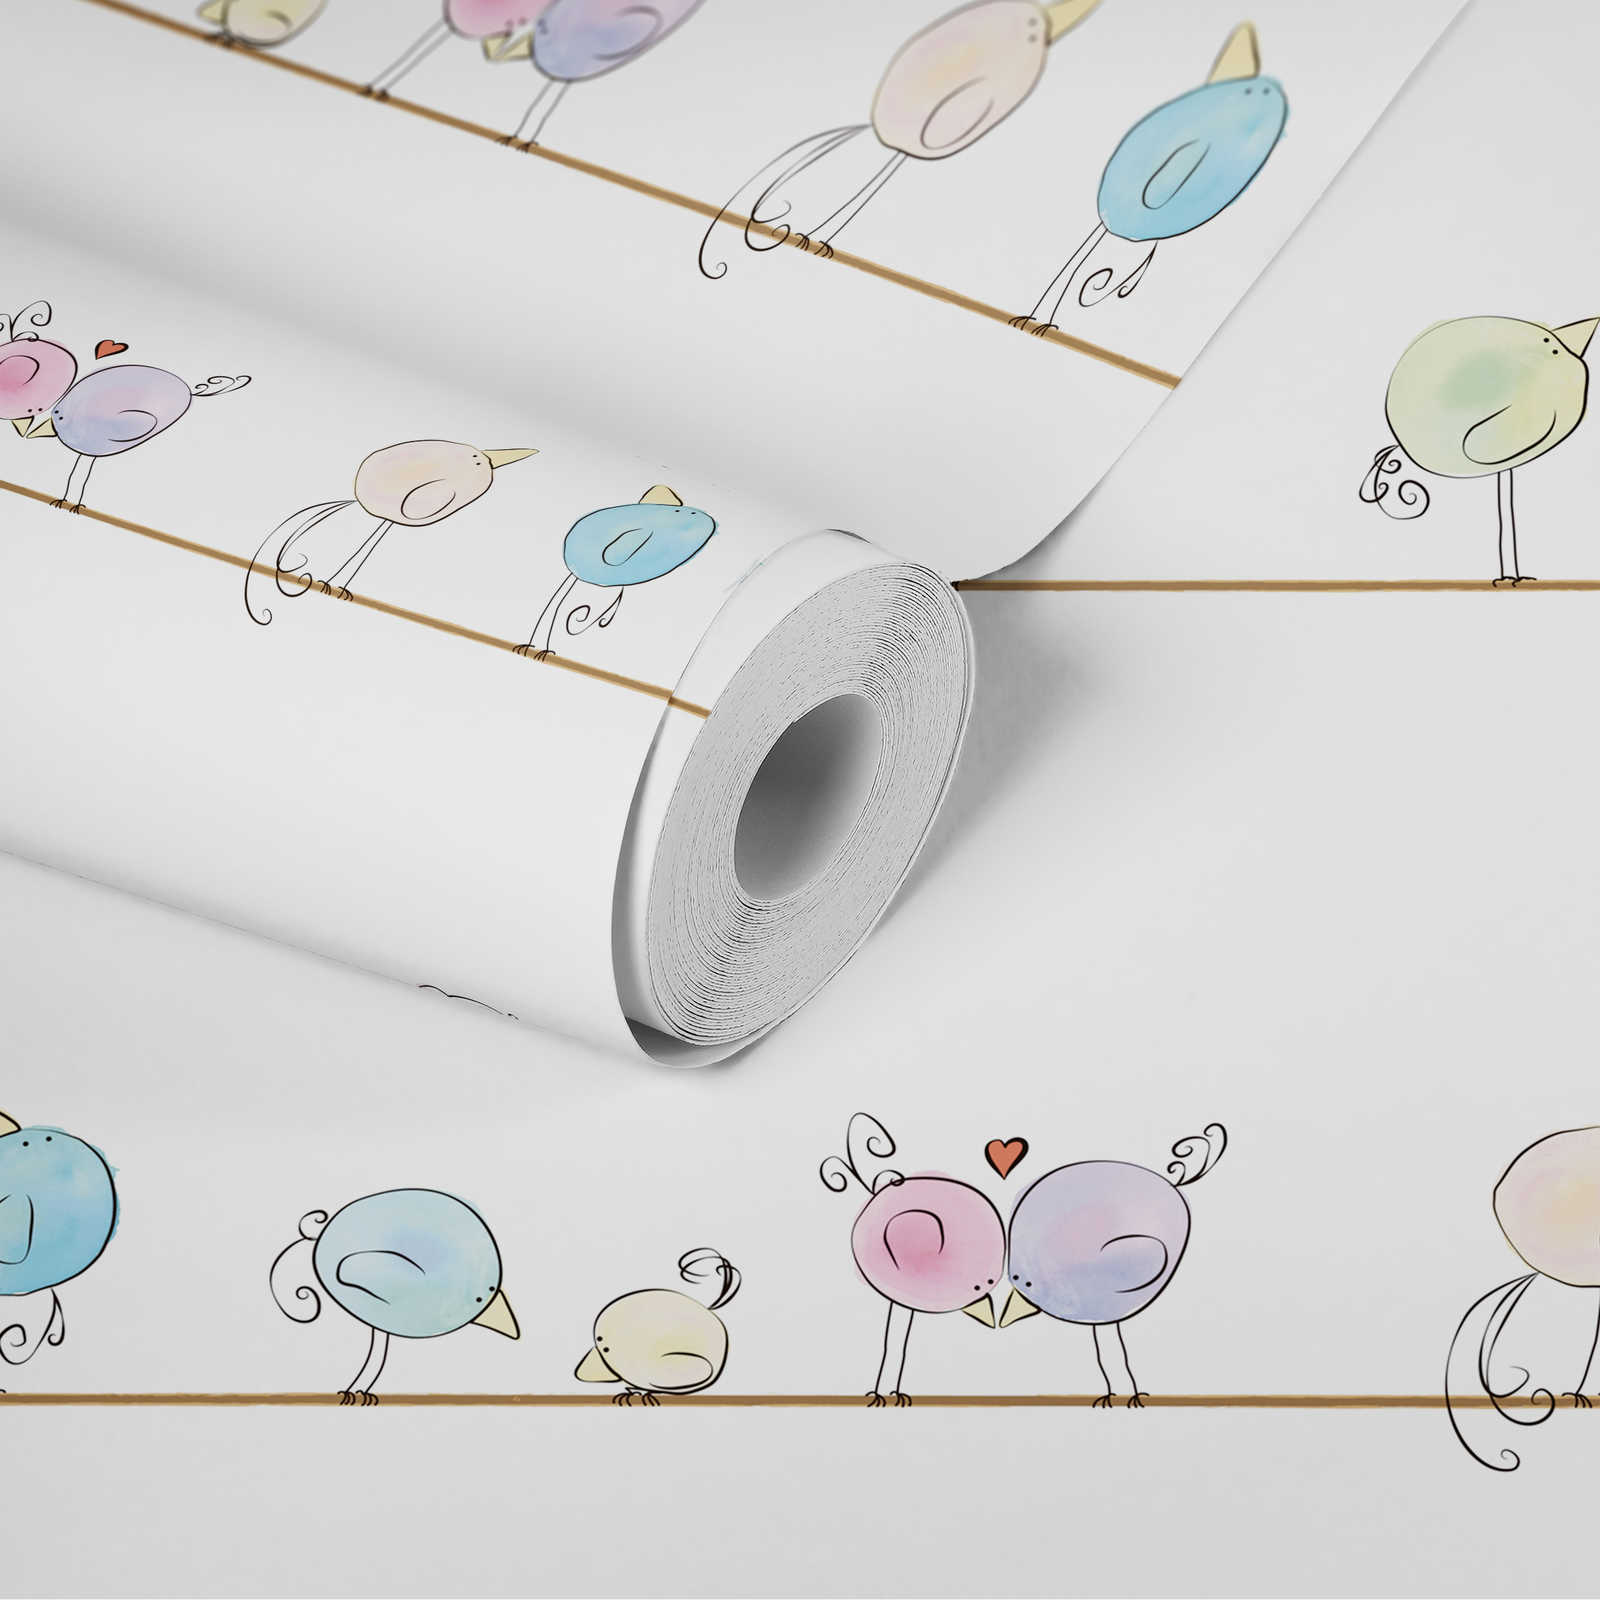             Papier peint chambre enfant aquarelle & oiseaux - multicolore, blanc, bleu
        